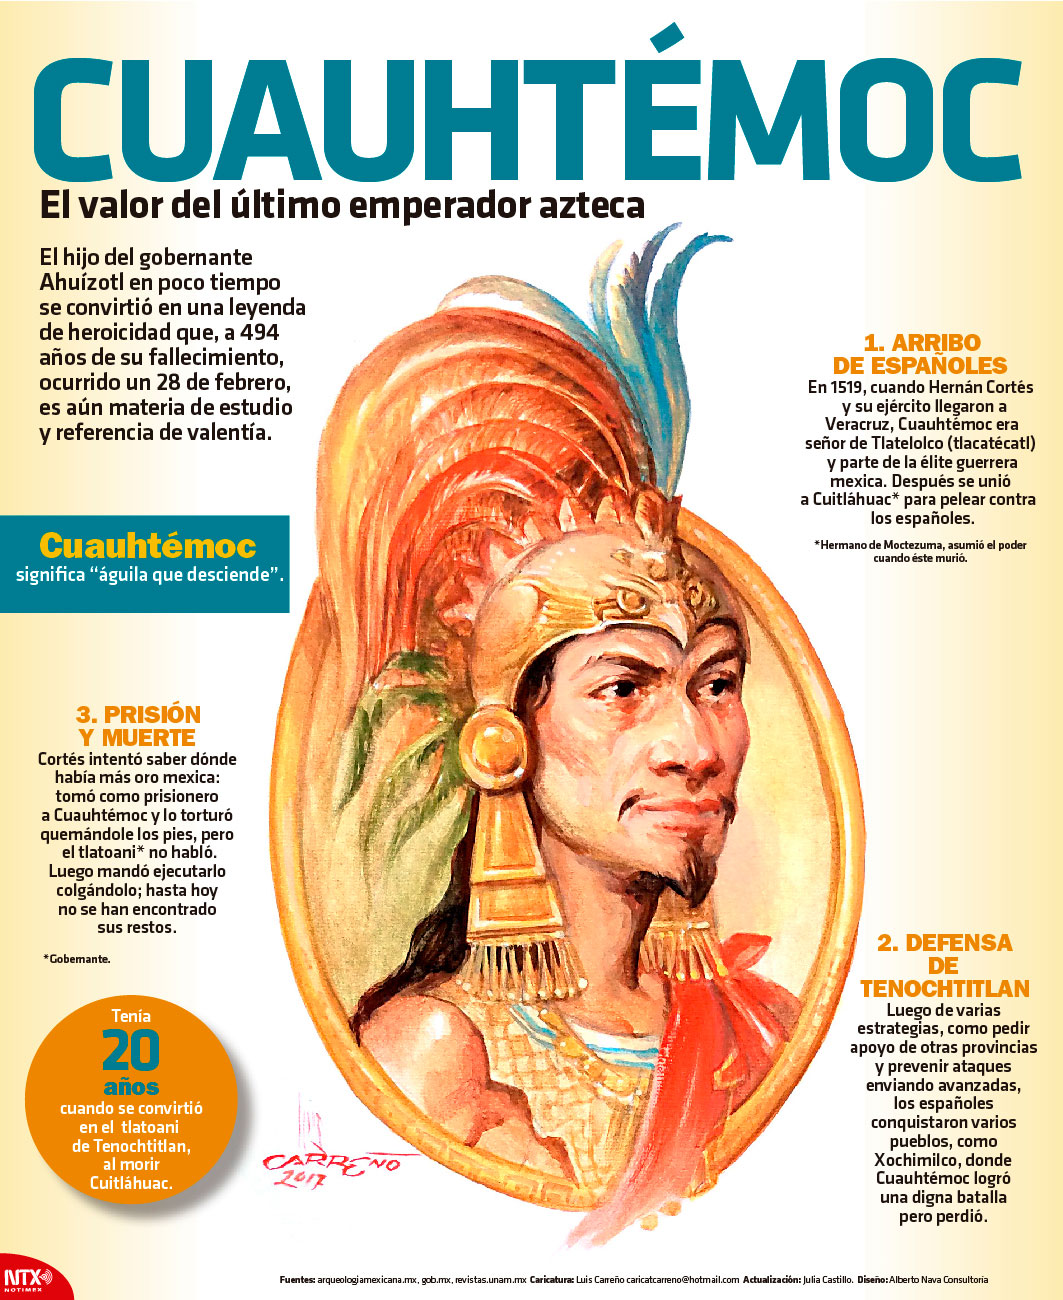 Cuauhtmoc, el valor del ltimo emperador azteca